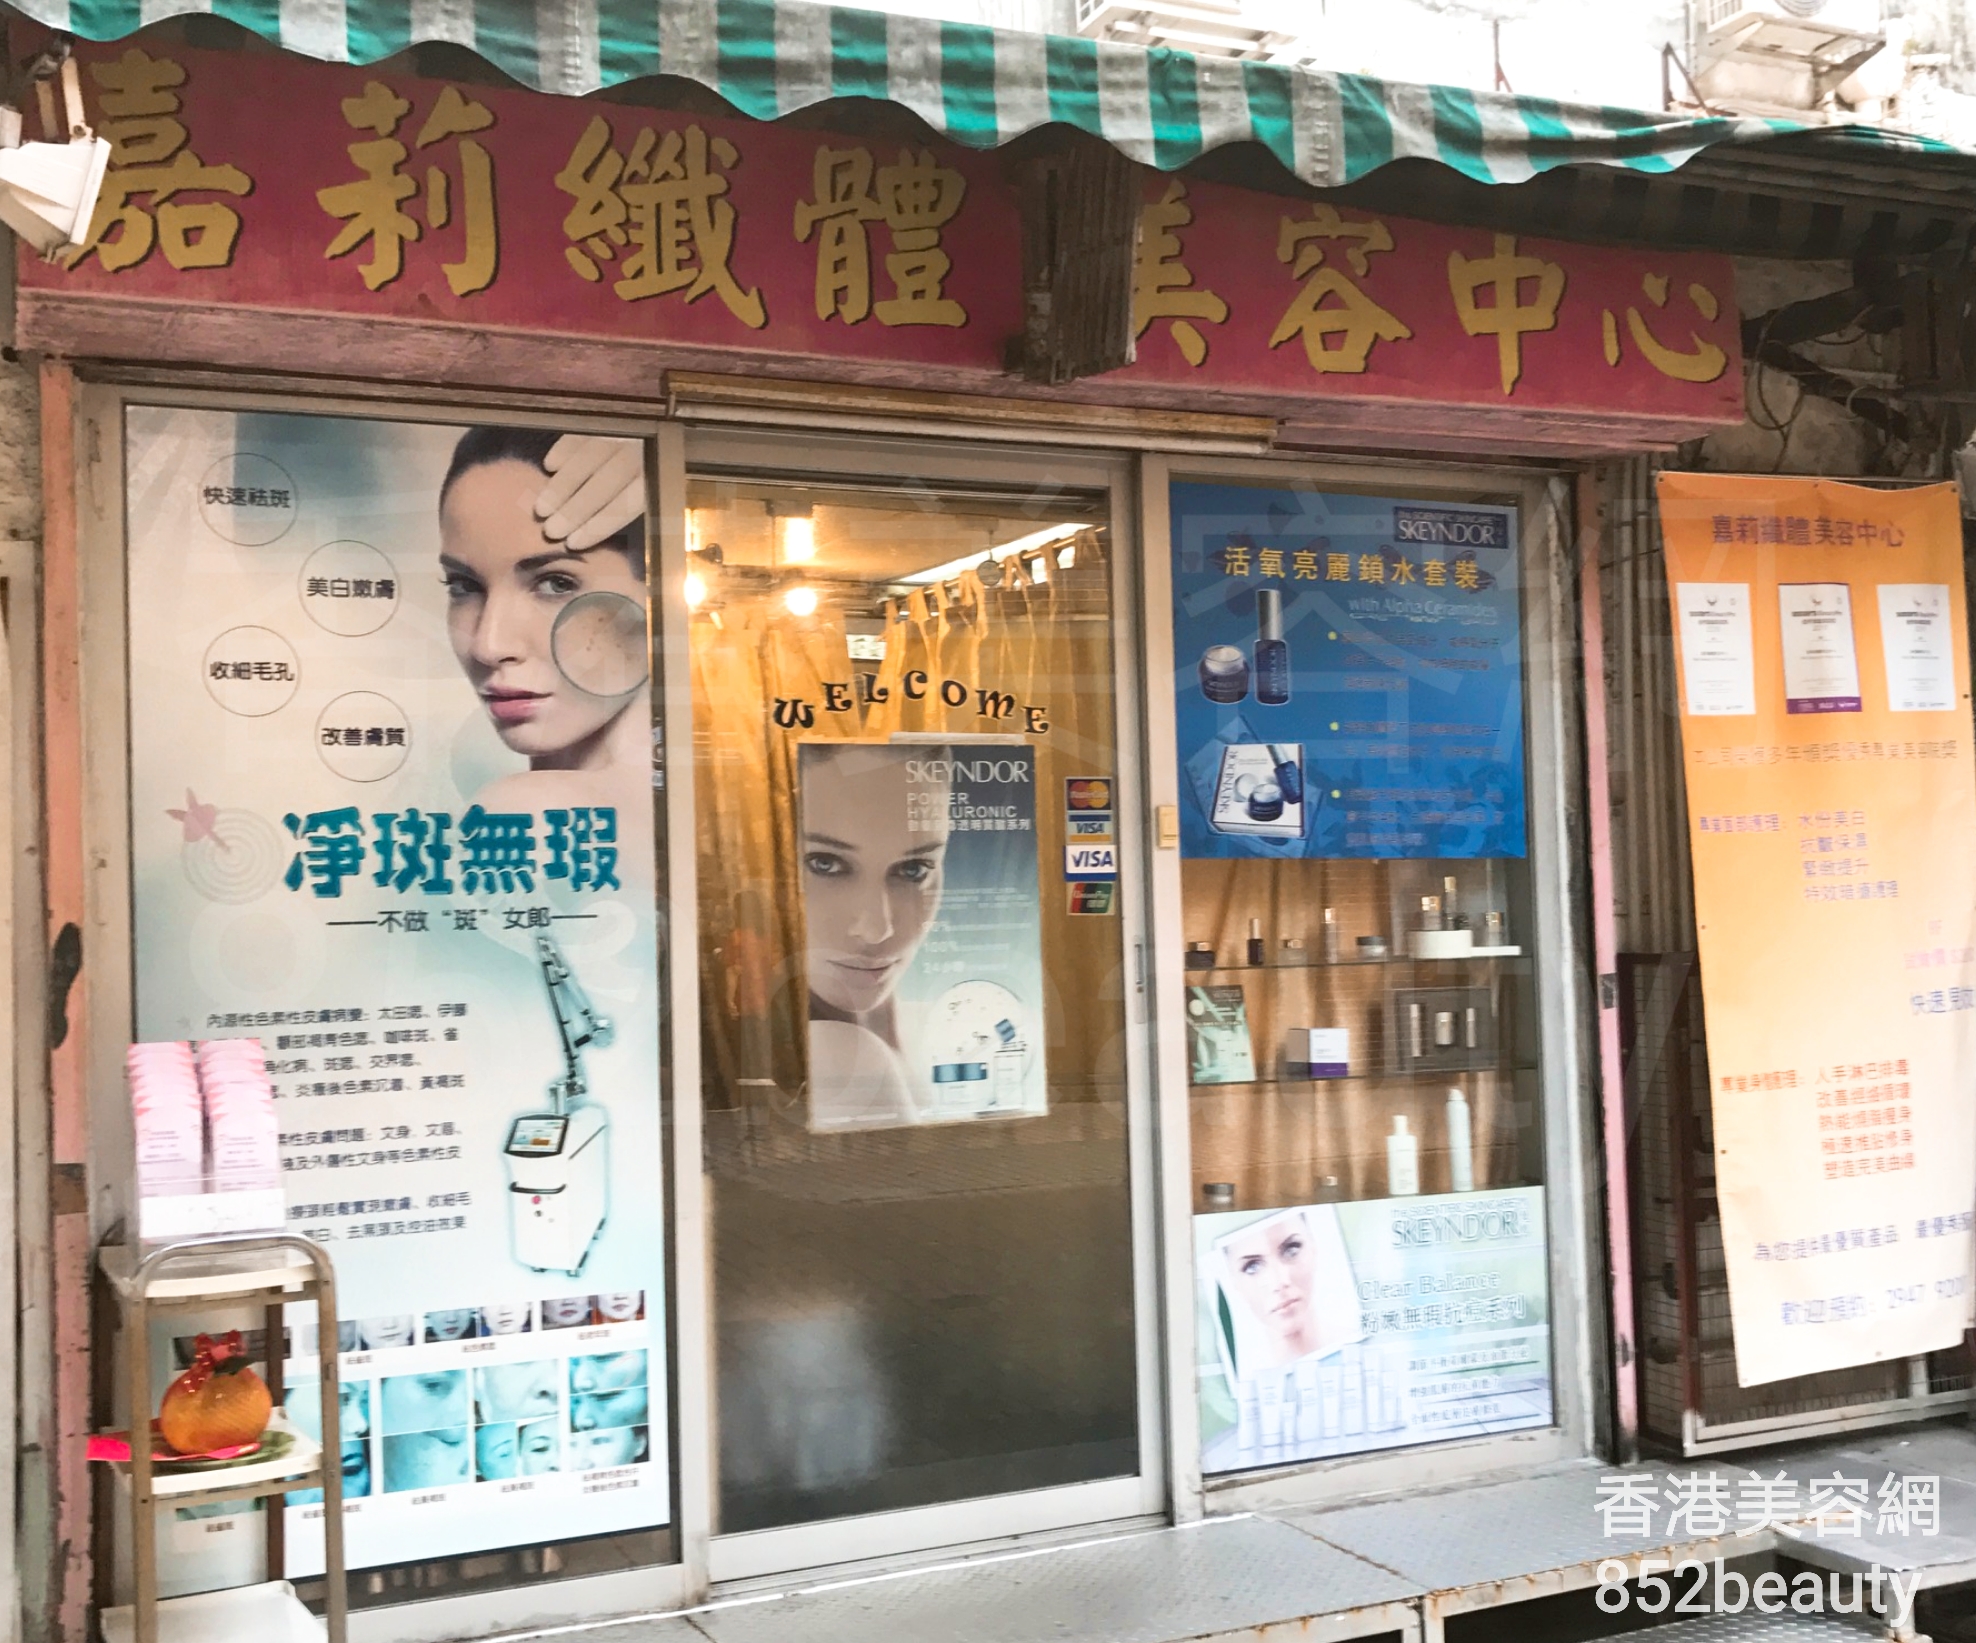 香港美容網 Hong Kong Beauty Salon 美容院 / 美容師: 嘉莉纖體美容中心